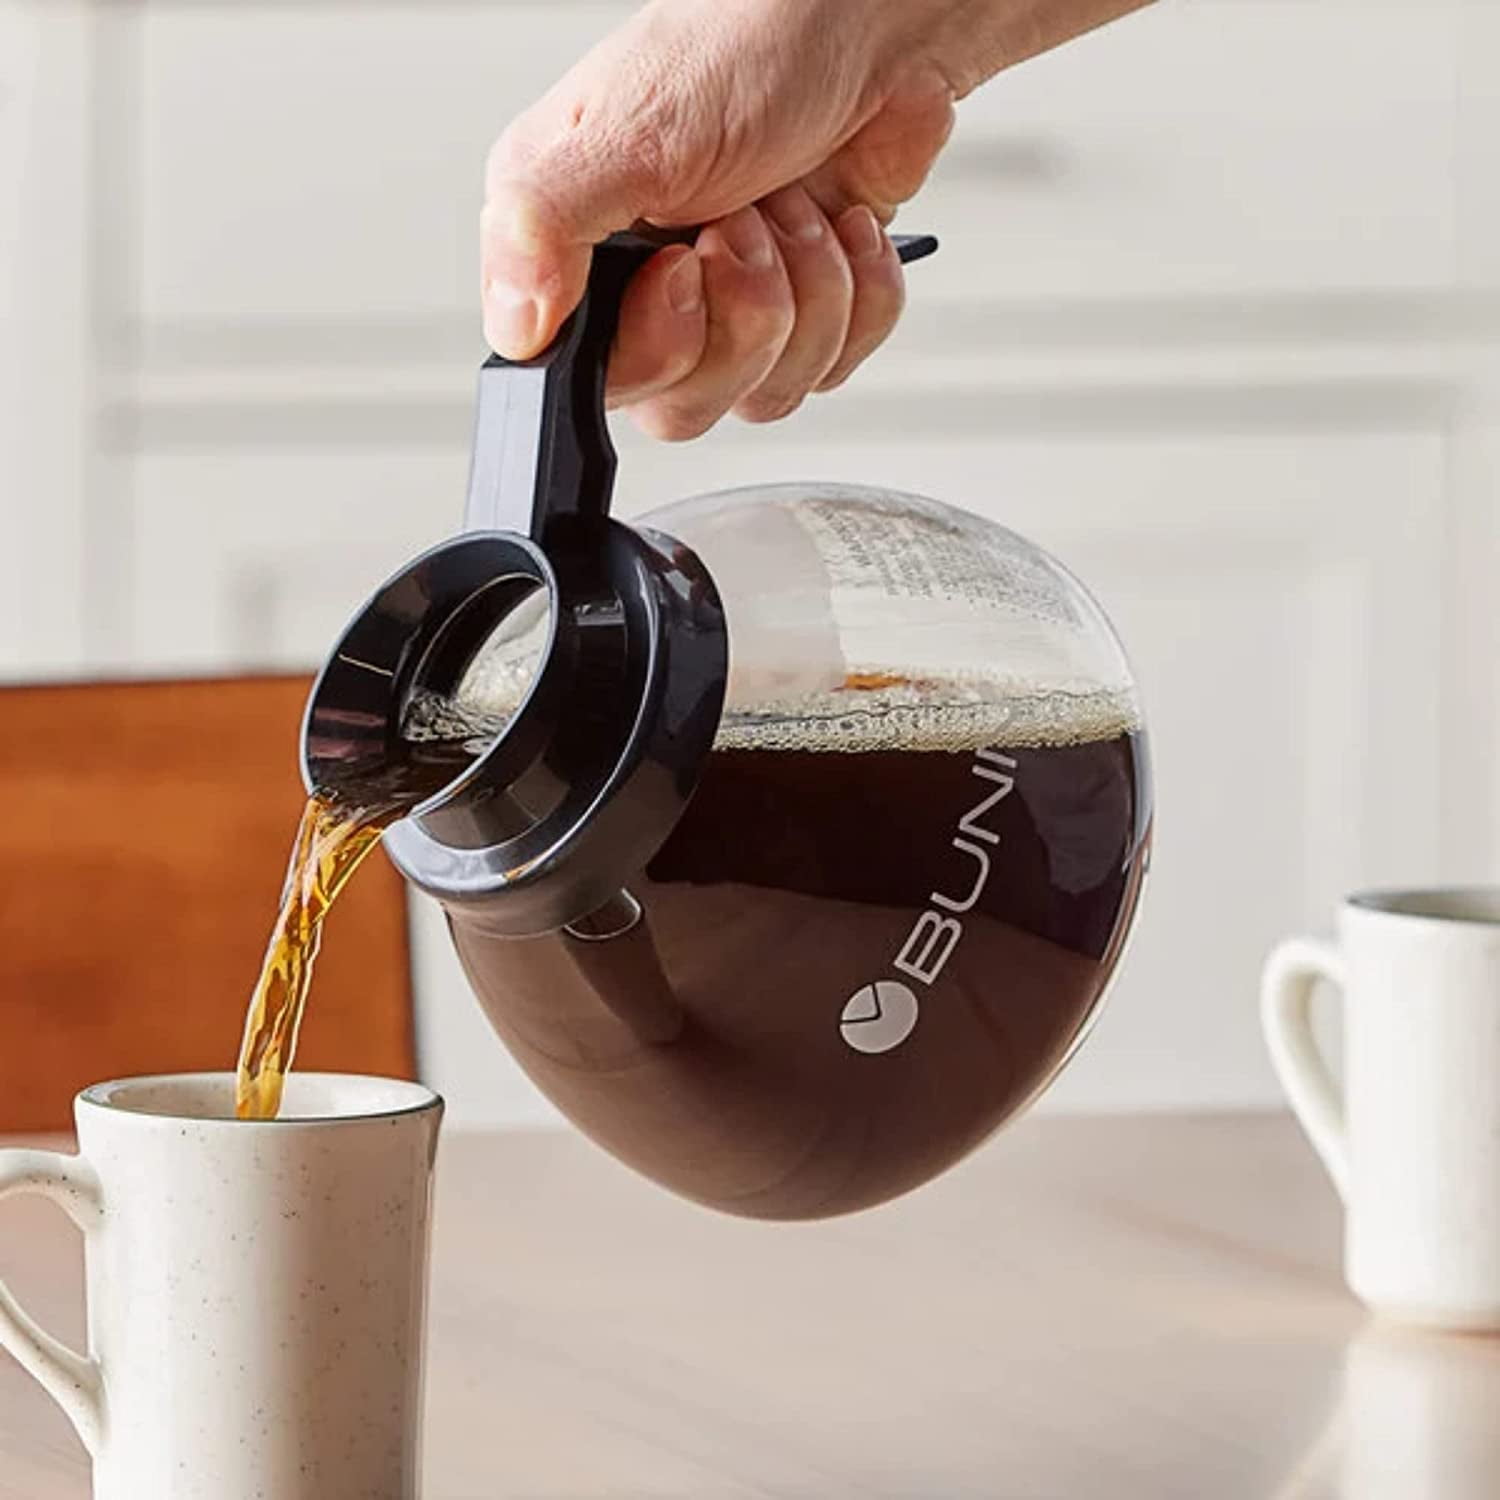 BUNN Glass Coffee Pot Decanter/Carafe, Regular, 12 cup Capacity, Black, Set  of 2